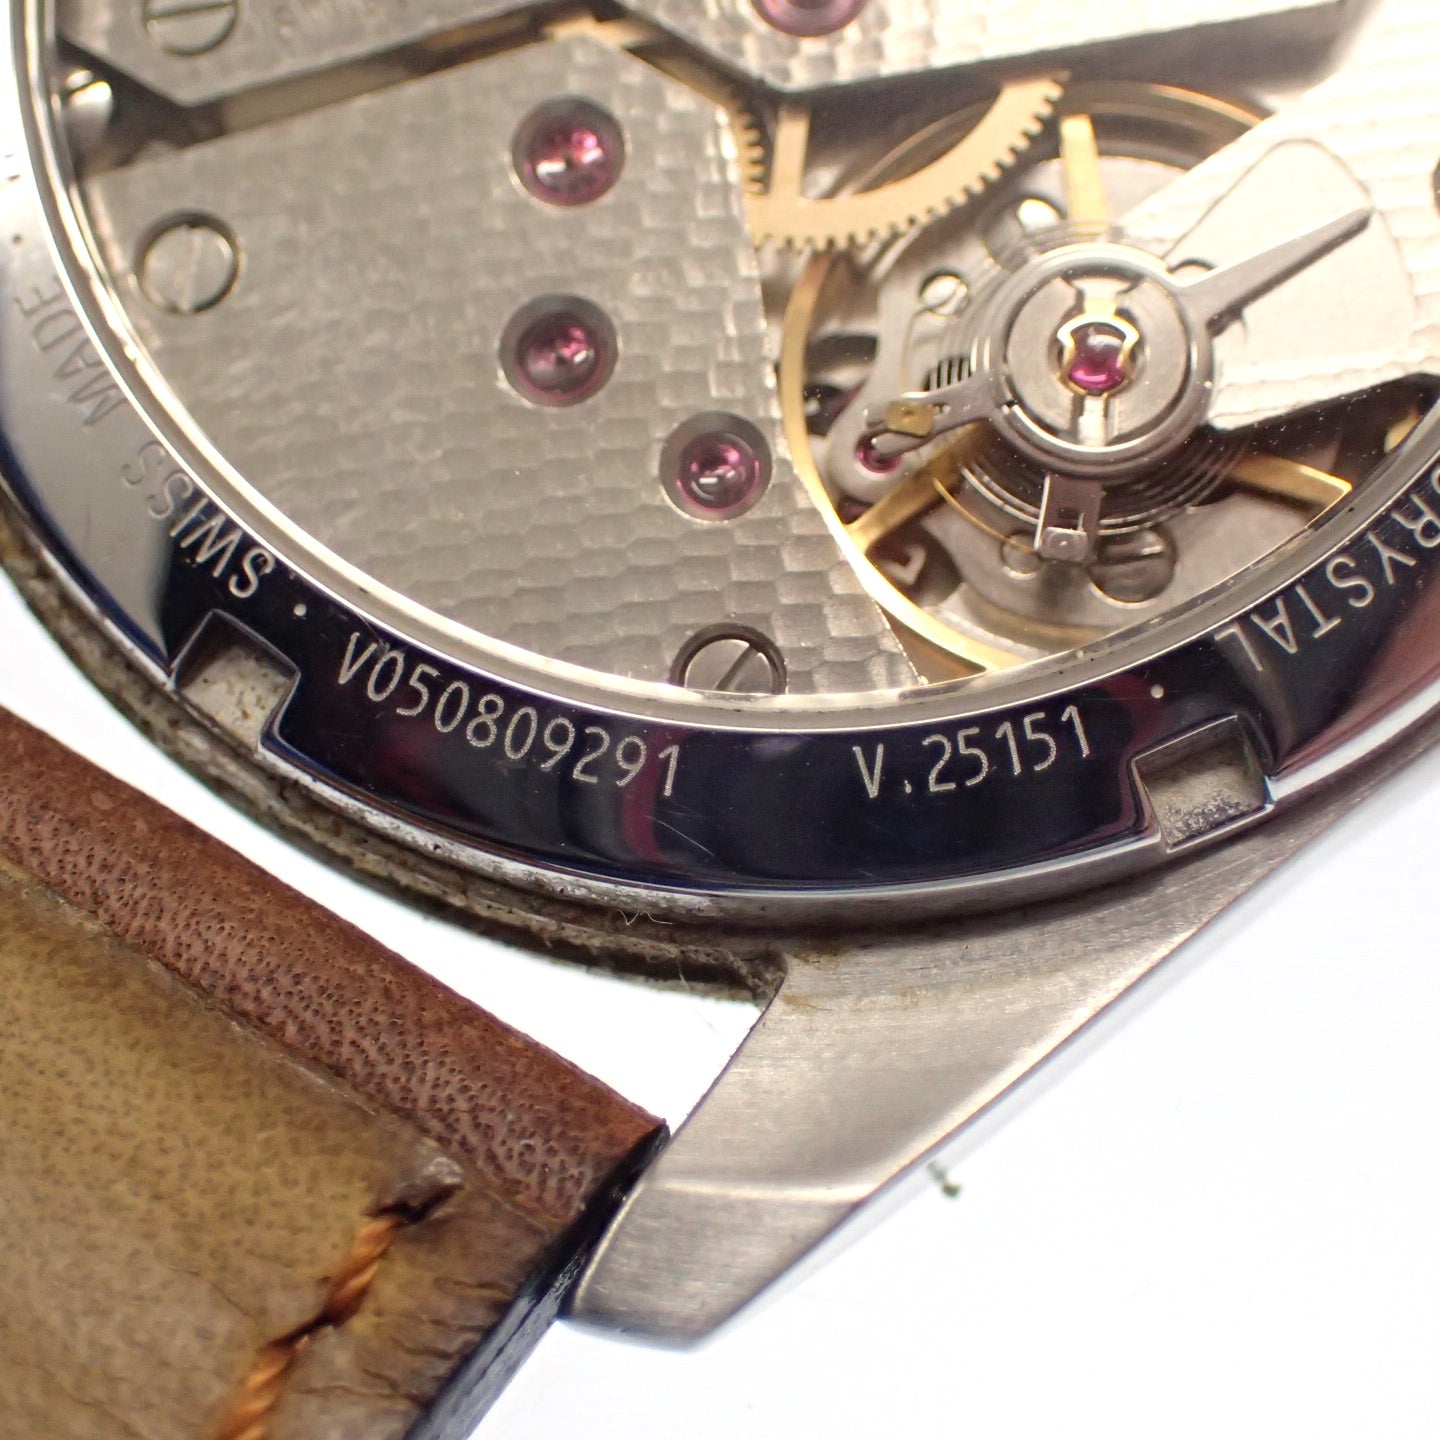 中古◆ビクトリノックス 腕時計 スイスアーミー 25151 手巻き 裏スケ スモールセコンド 文字盤黒 VICTORINOX【AFI18】